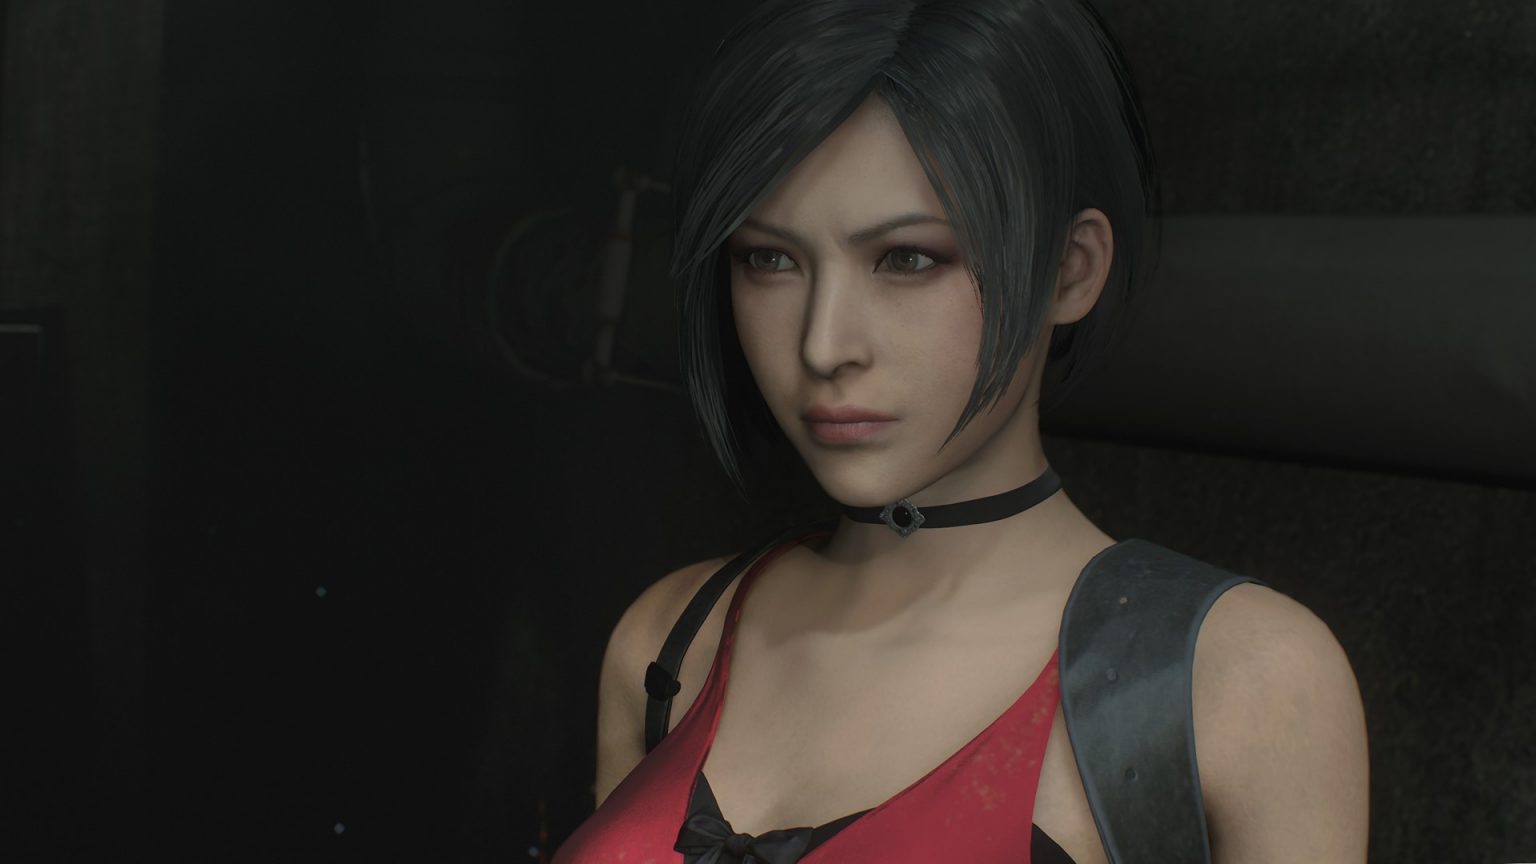 Novos Gameplays De Resident Evil 2 Remake Recriam Cenas Clássicas Do Jogo Original Critical Hits 3835